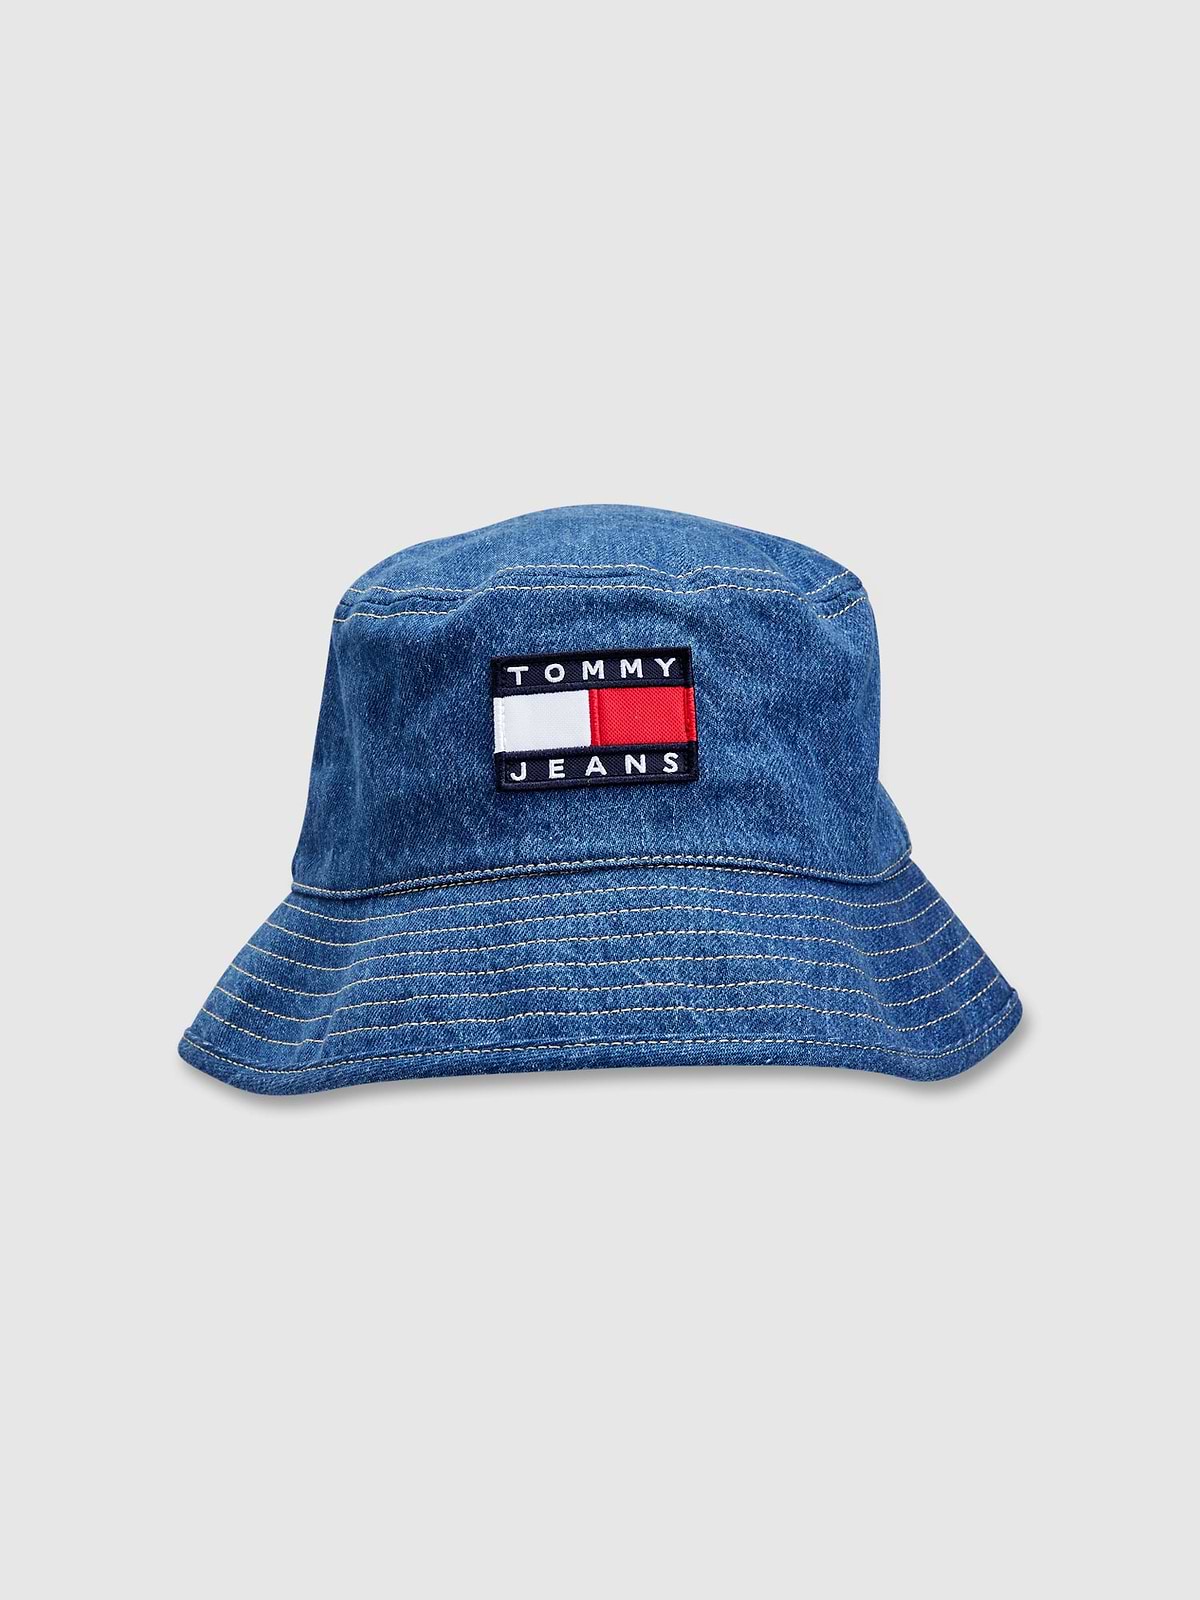 כובע באקט ג'ינס עם תווית לוגו / יוניסקס